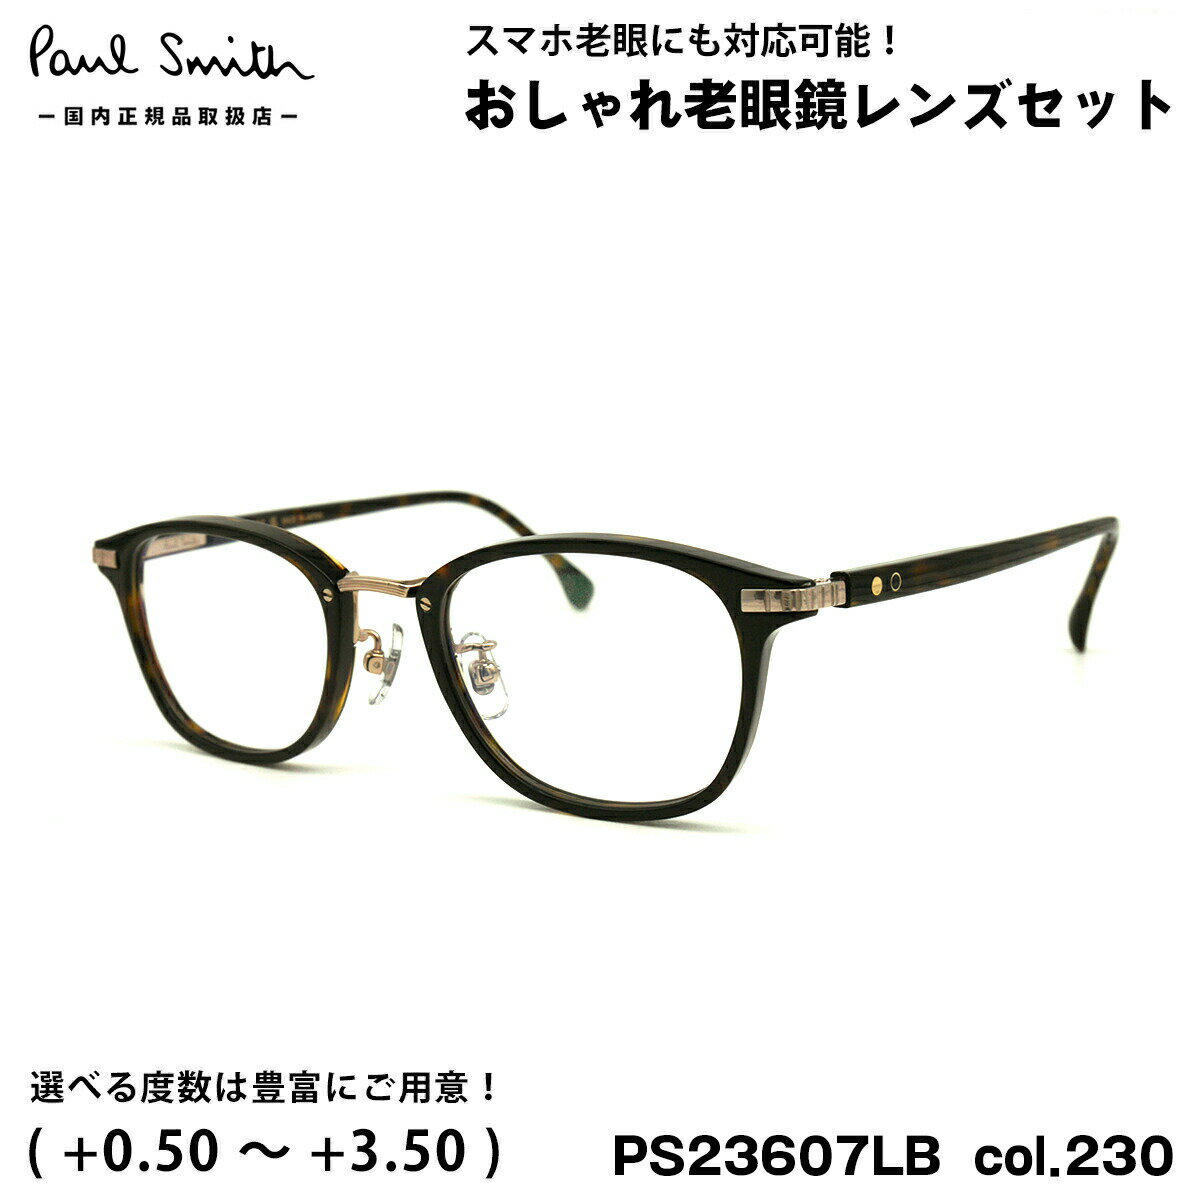 ポールスミス 老眼鏡 PS23607LB col.230 48mm Paul Smith HALIFIELD 国内正規品 UVカット ブルーライトカット